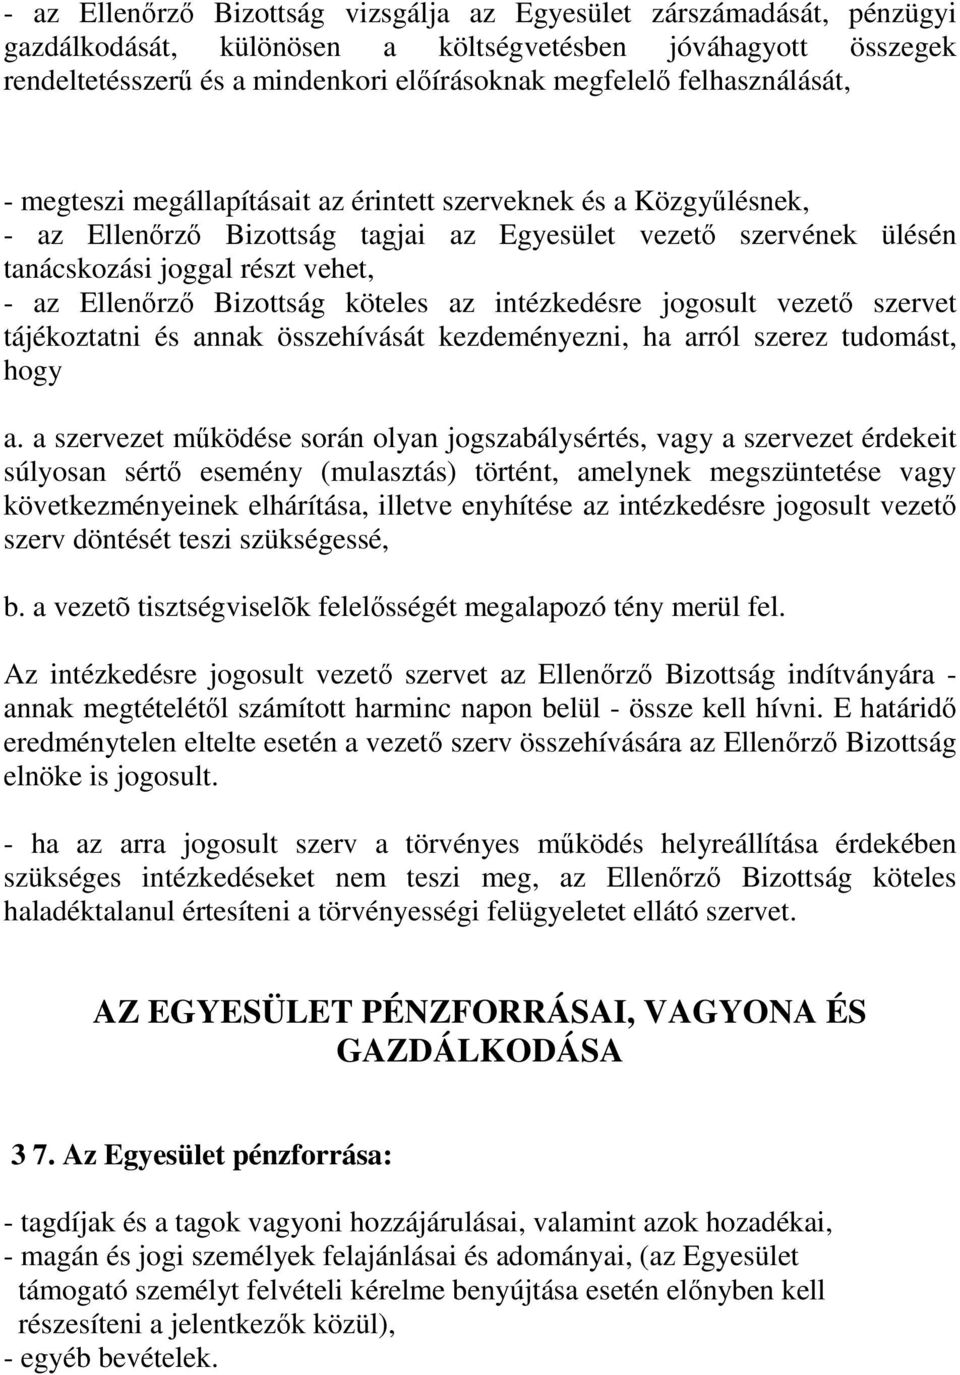 Ellenırzı Bizottság köteles az intézkedésre jogosult vezetı szervet tájékoztatni és annak összehívását kezdeményezni, ha arról szerez tudomást, hogy a.